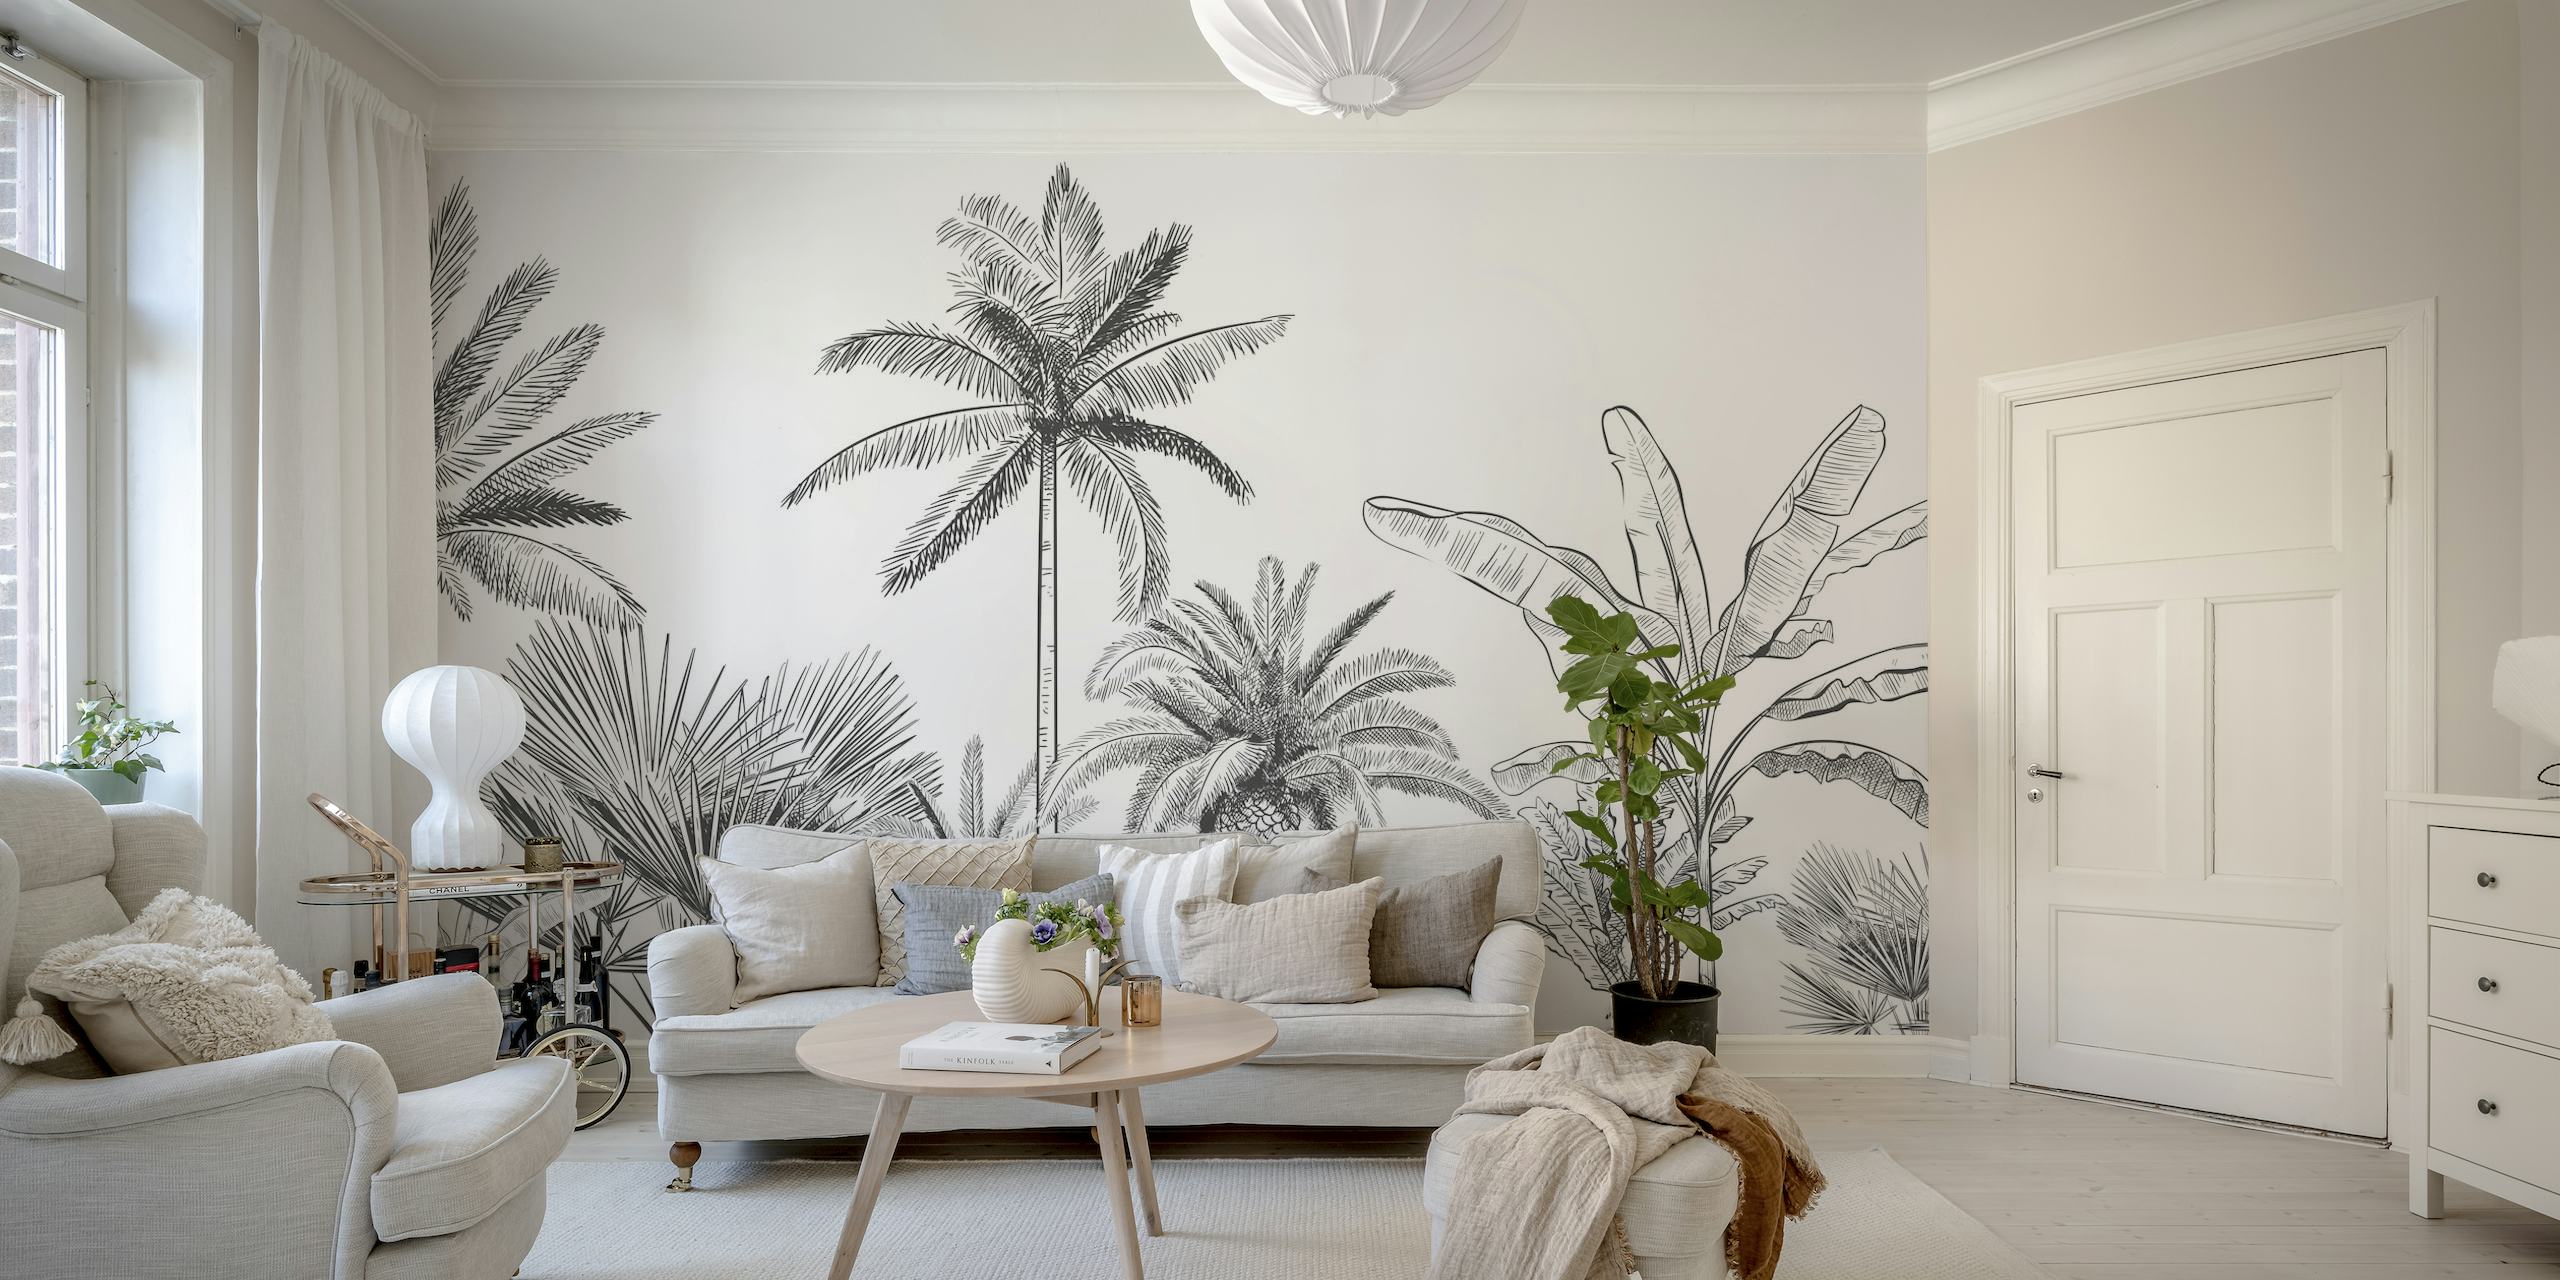 Jednobojna zidna slika palmi u stilu skice